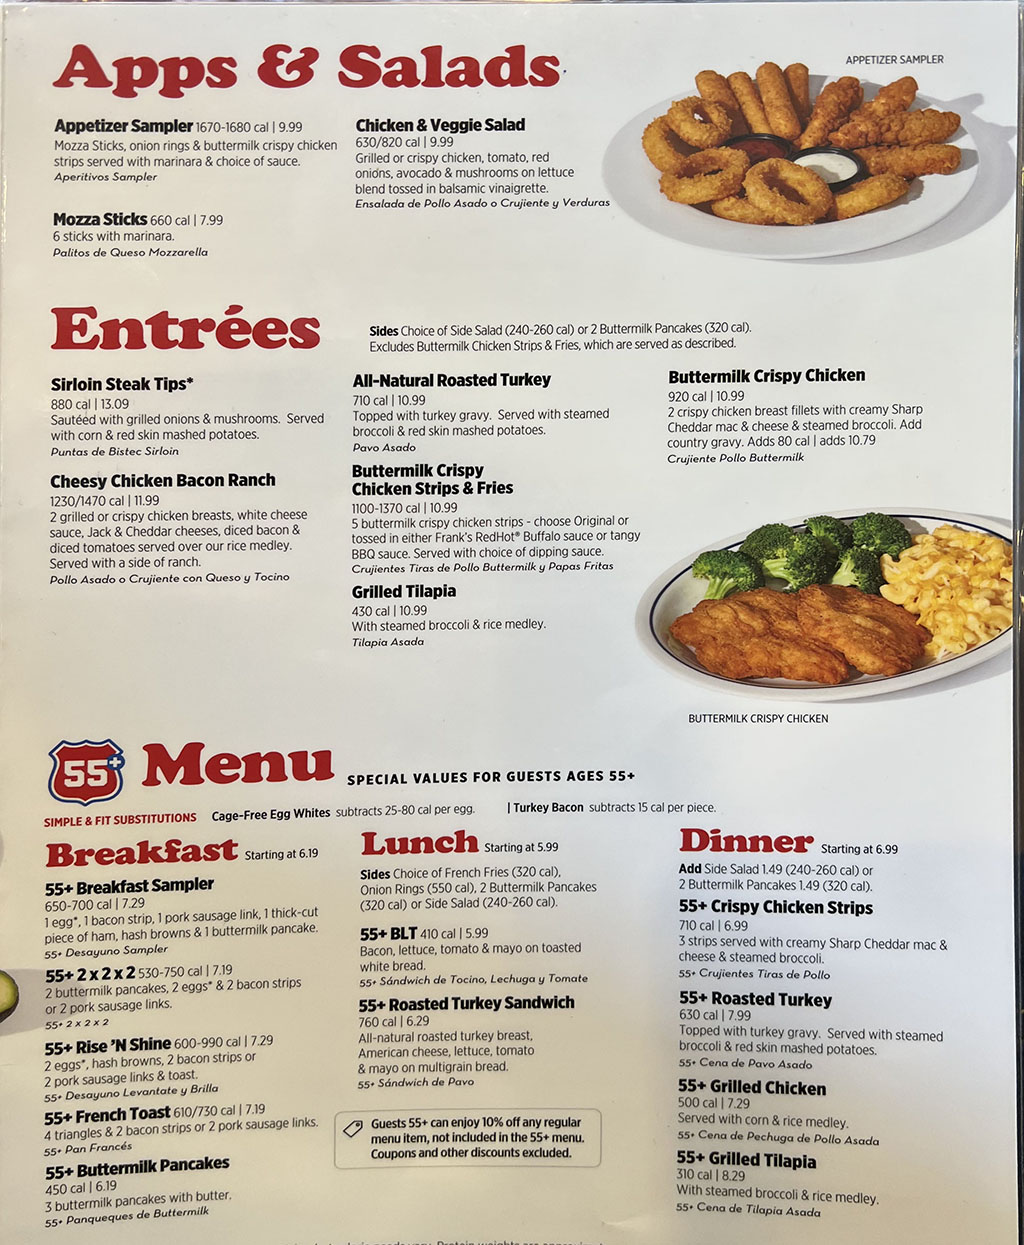 IHOP menu – SLC menu